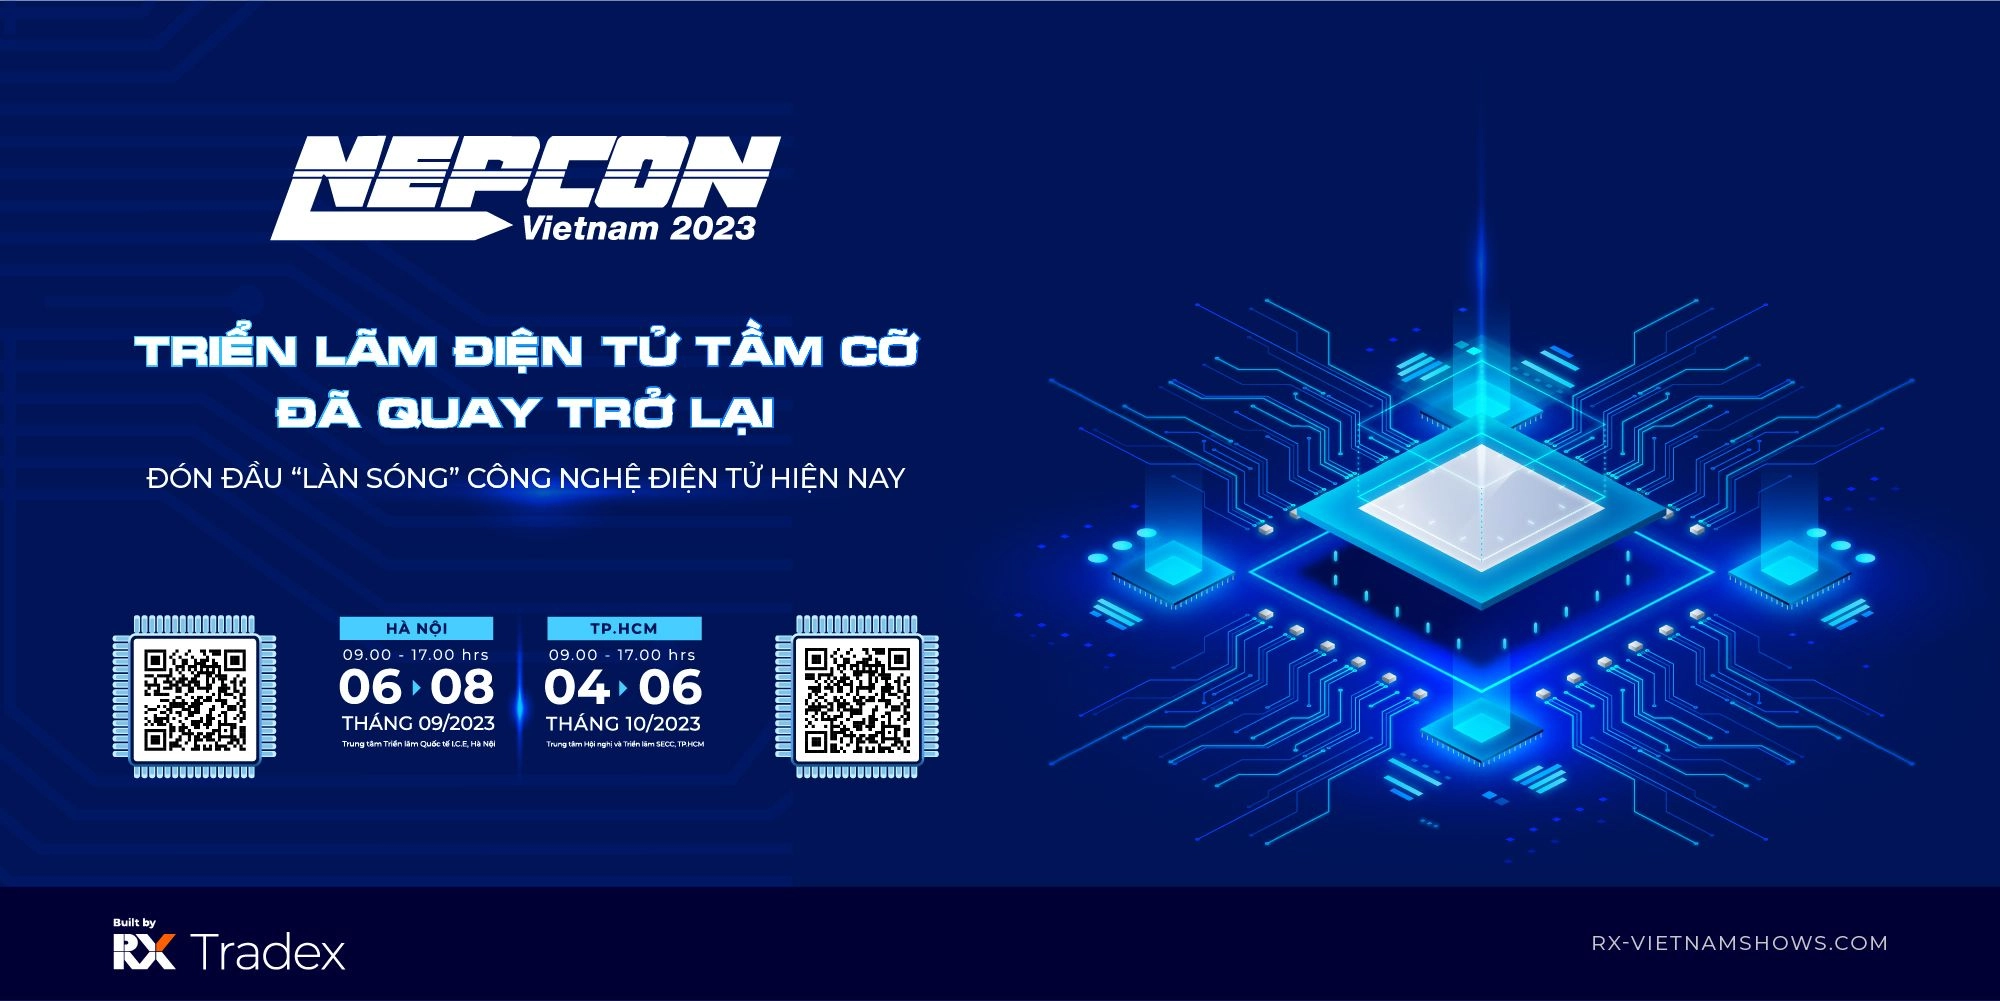 NEPCON Vietnam 2023 Triển lãm điện tử tầm cỡ đã quay trở lại